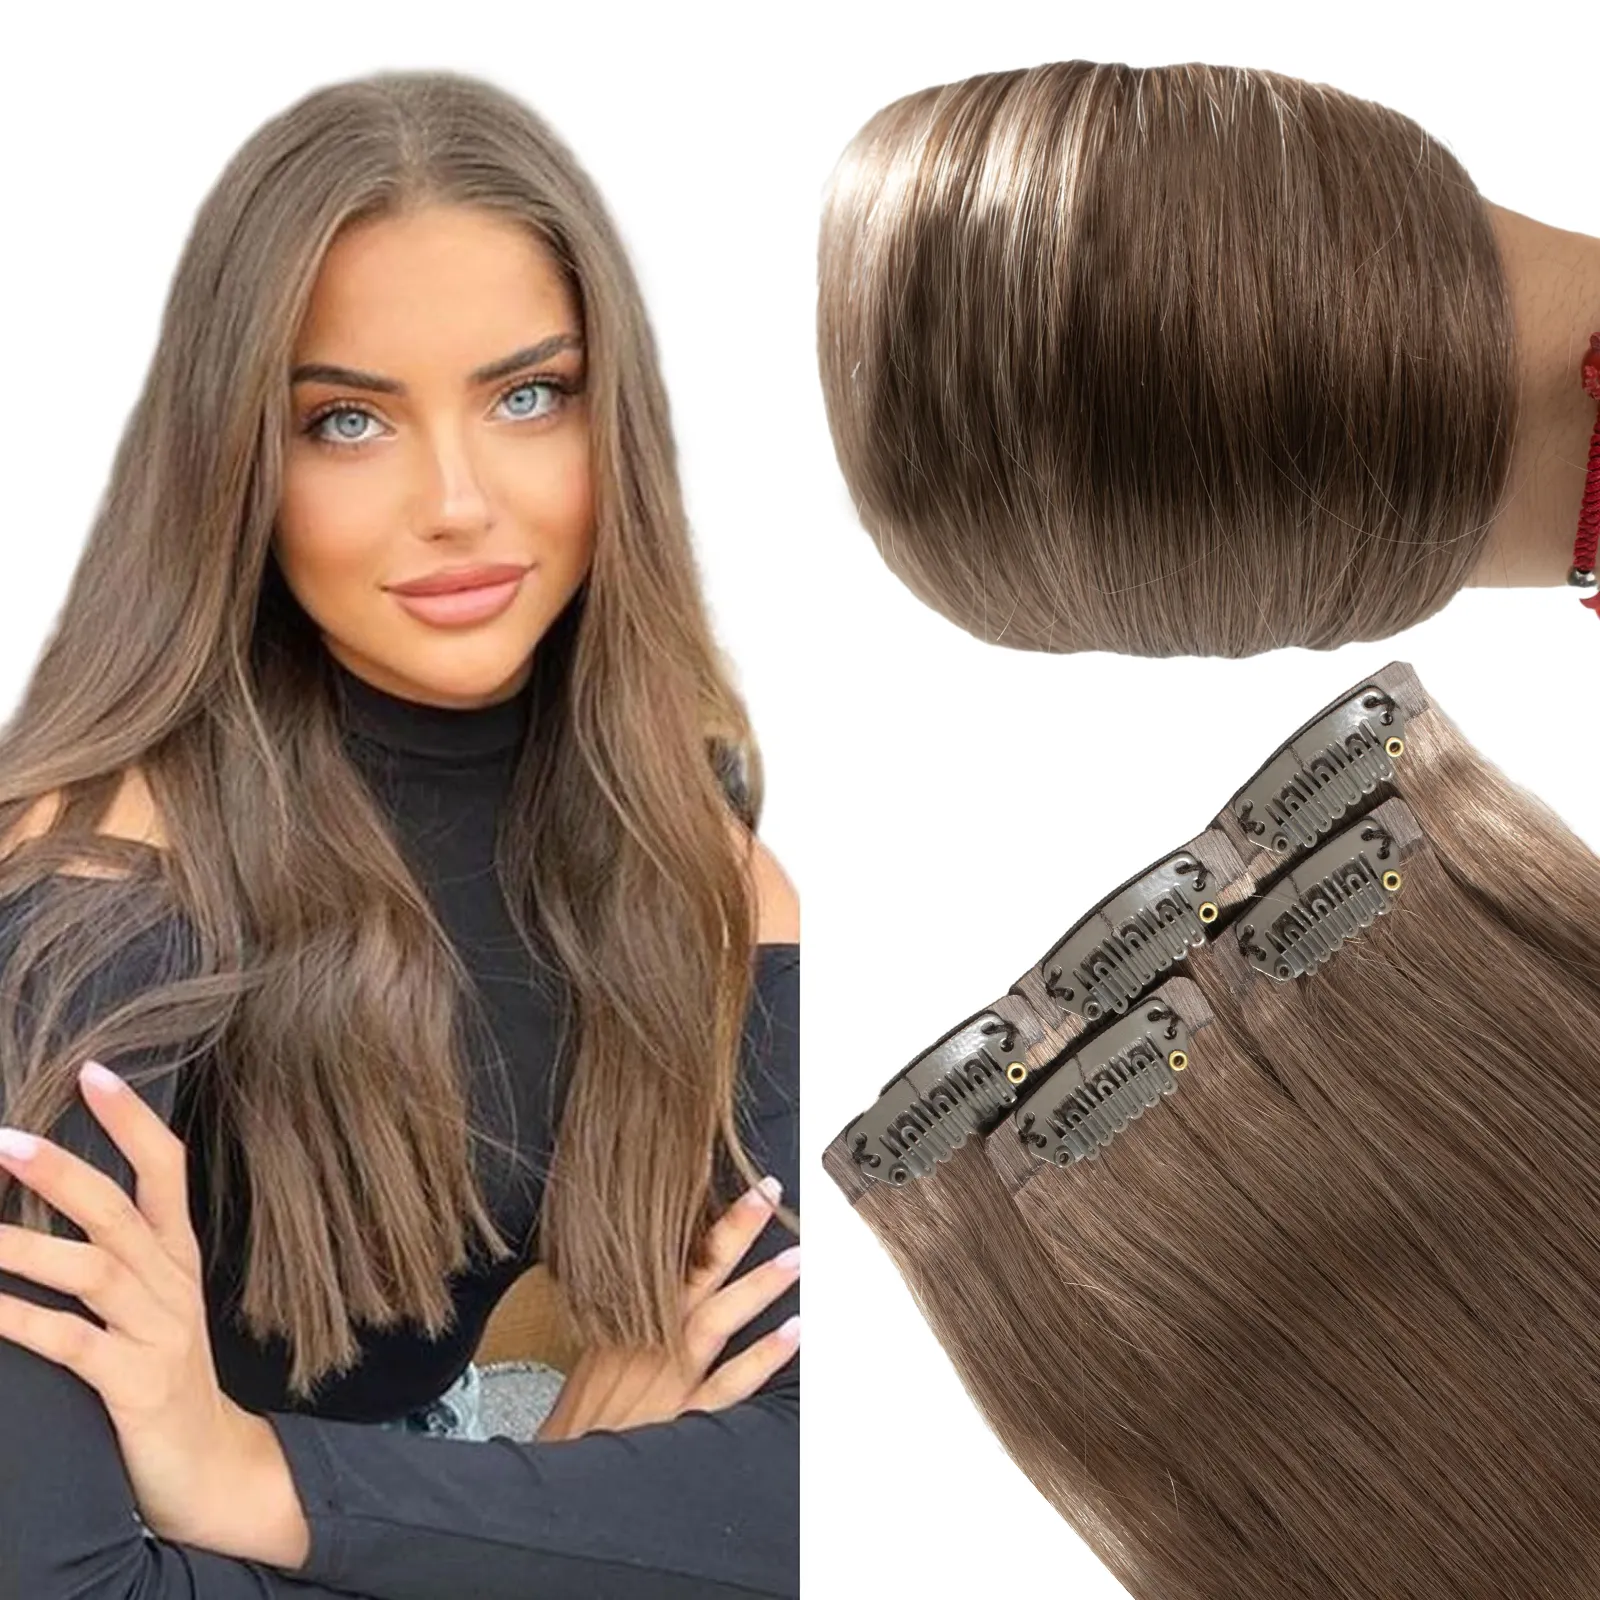 Clips sans couture de luxe de bonne qualité dans les cheveux 100% Remy cheveux humains pleine tête Clip dans l'extension de cheveux #8 couleur brun cendré